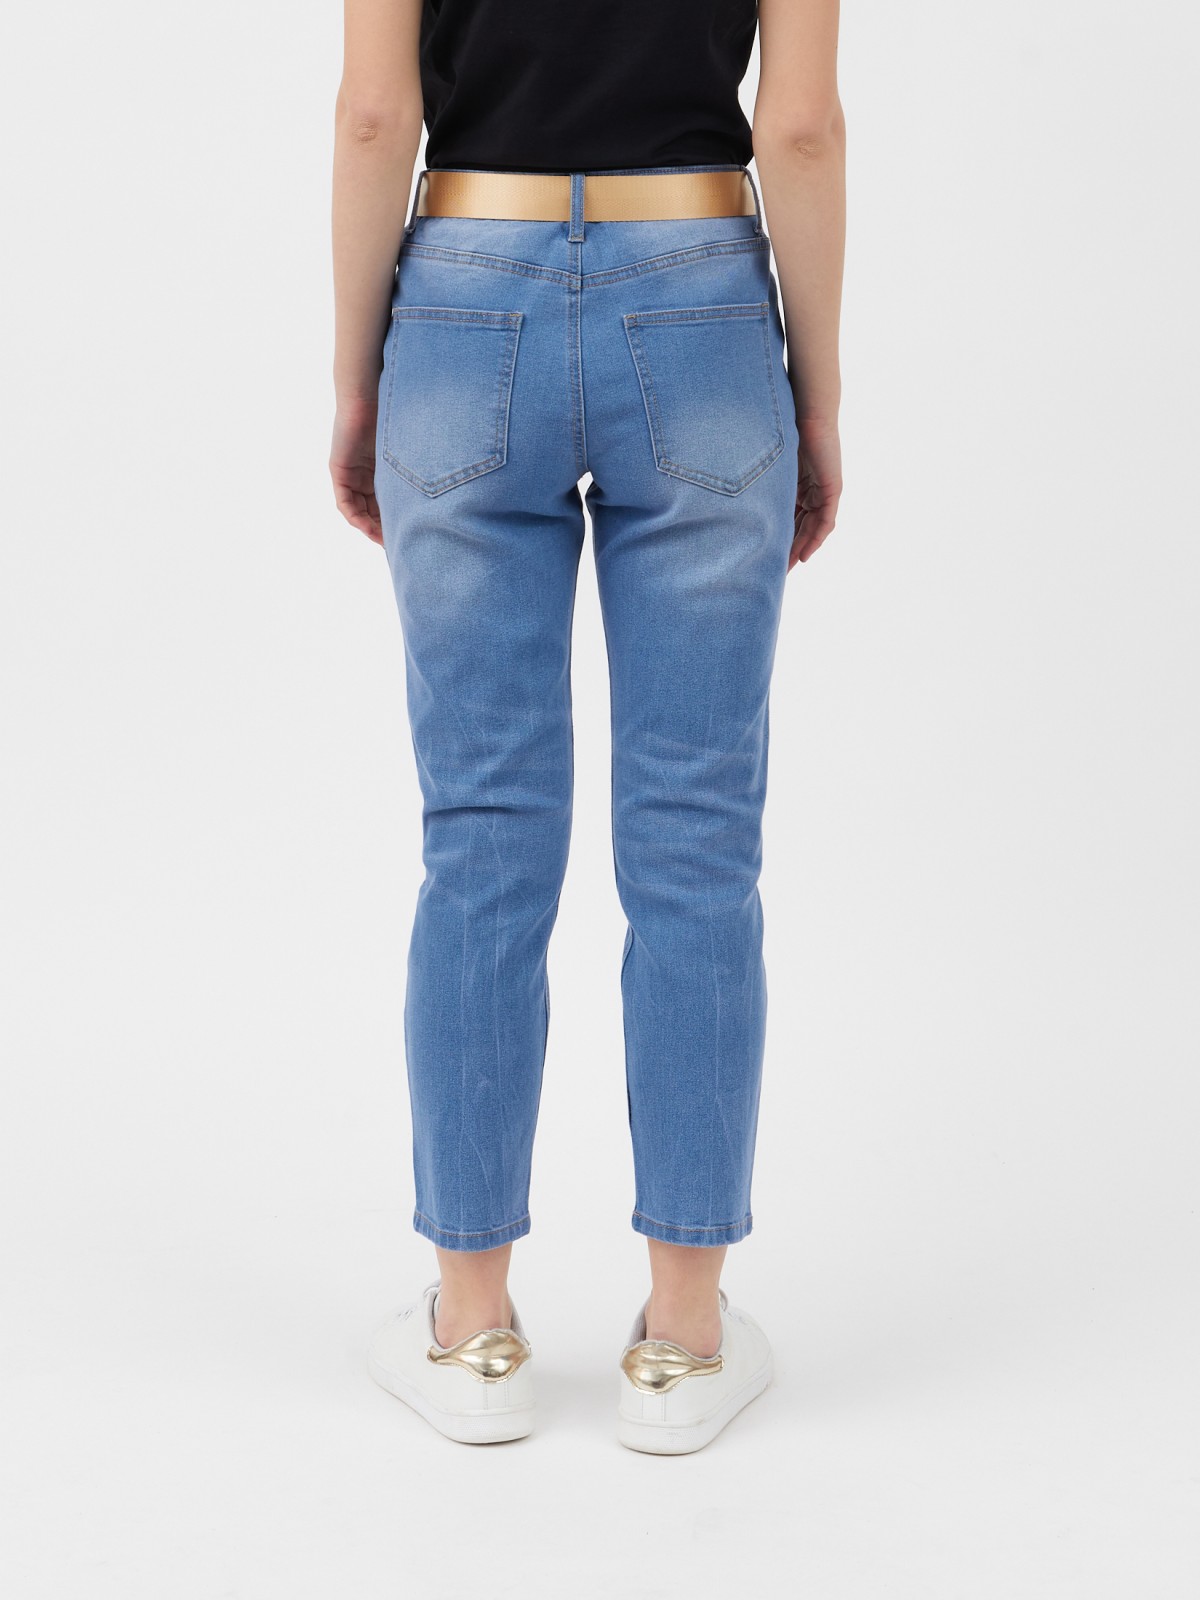 Брюки джинсовые zolla 02121710L163, цвет светло-голубой, размер 25 - фото 2